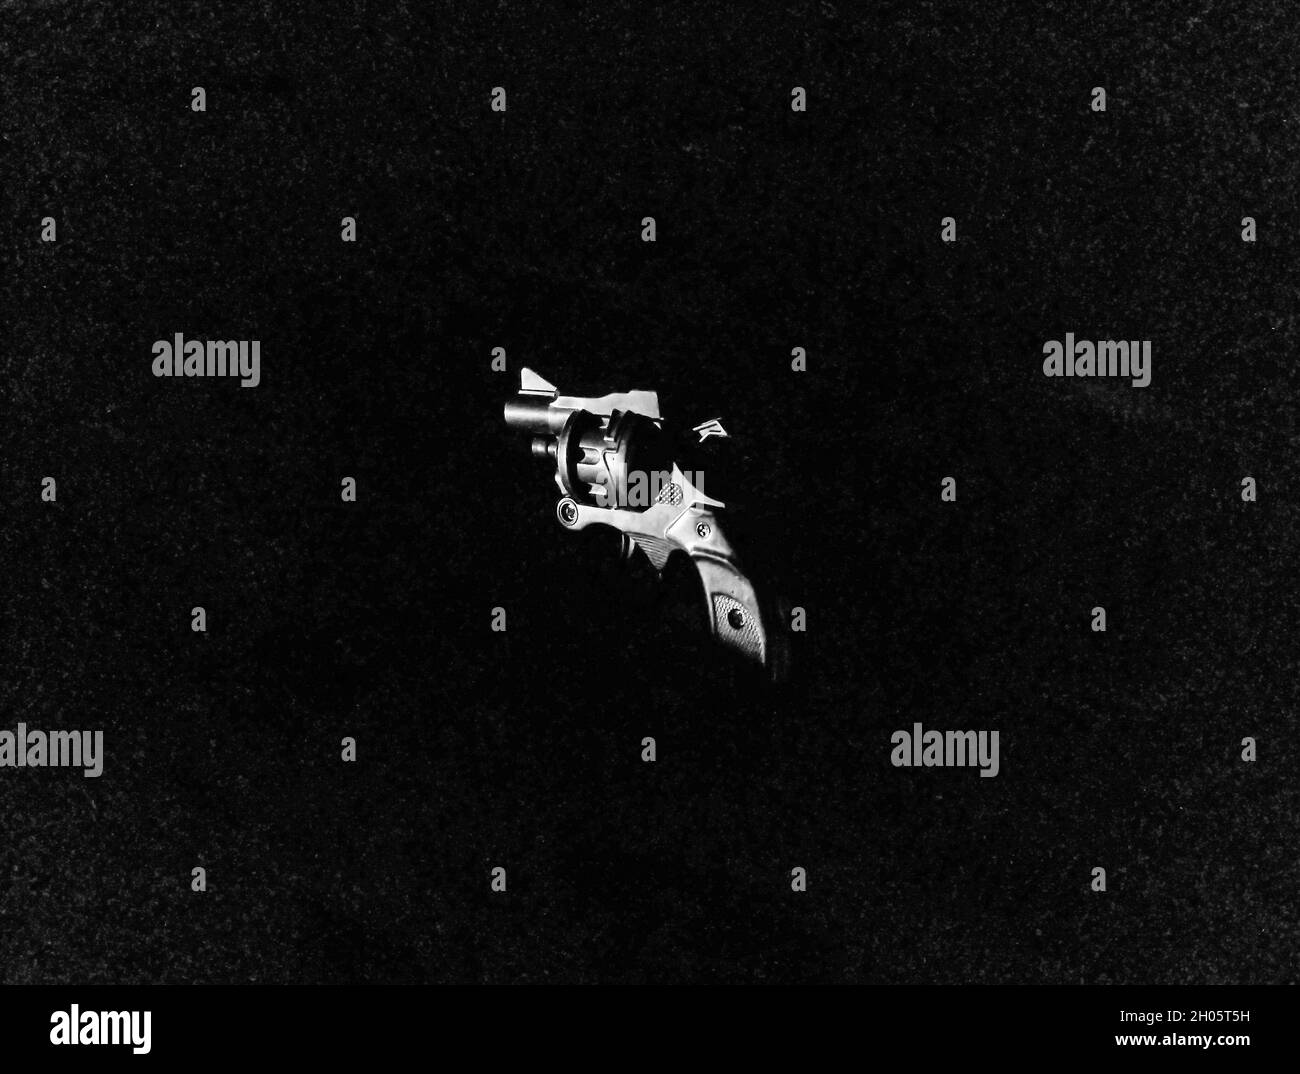 Colt gun on a dark background Stock Photo